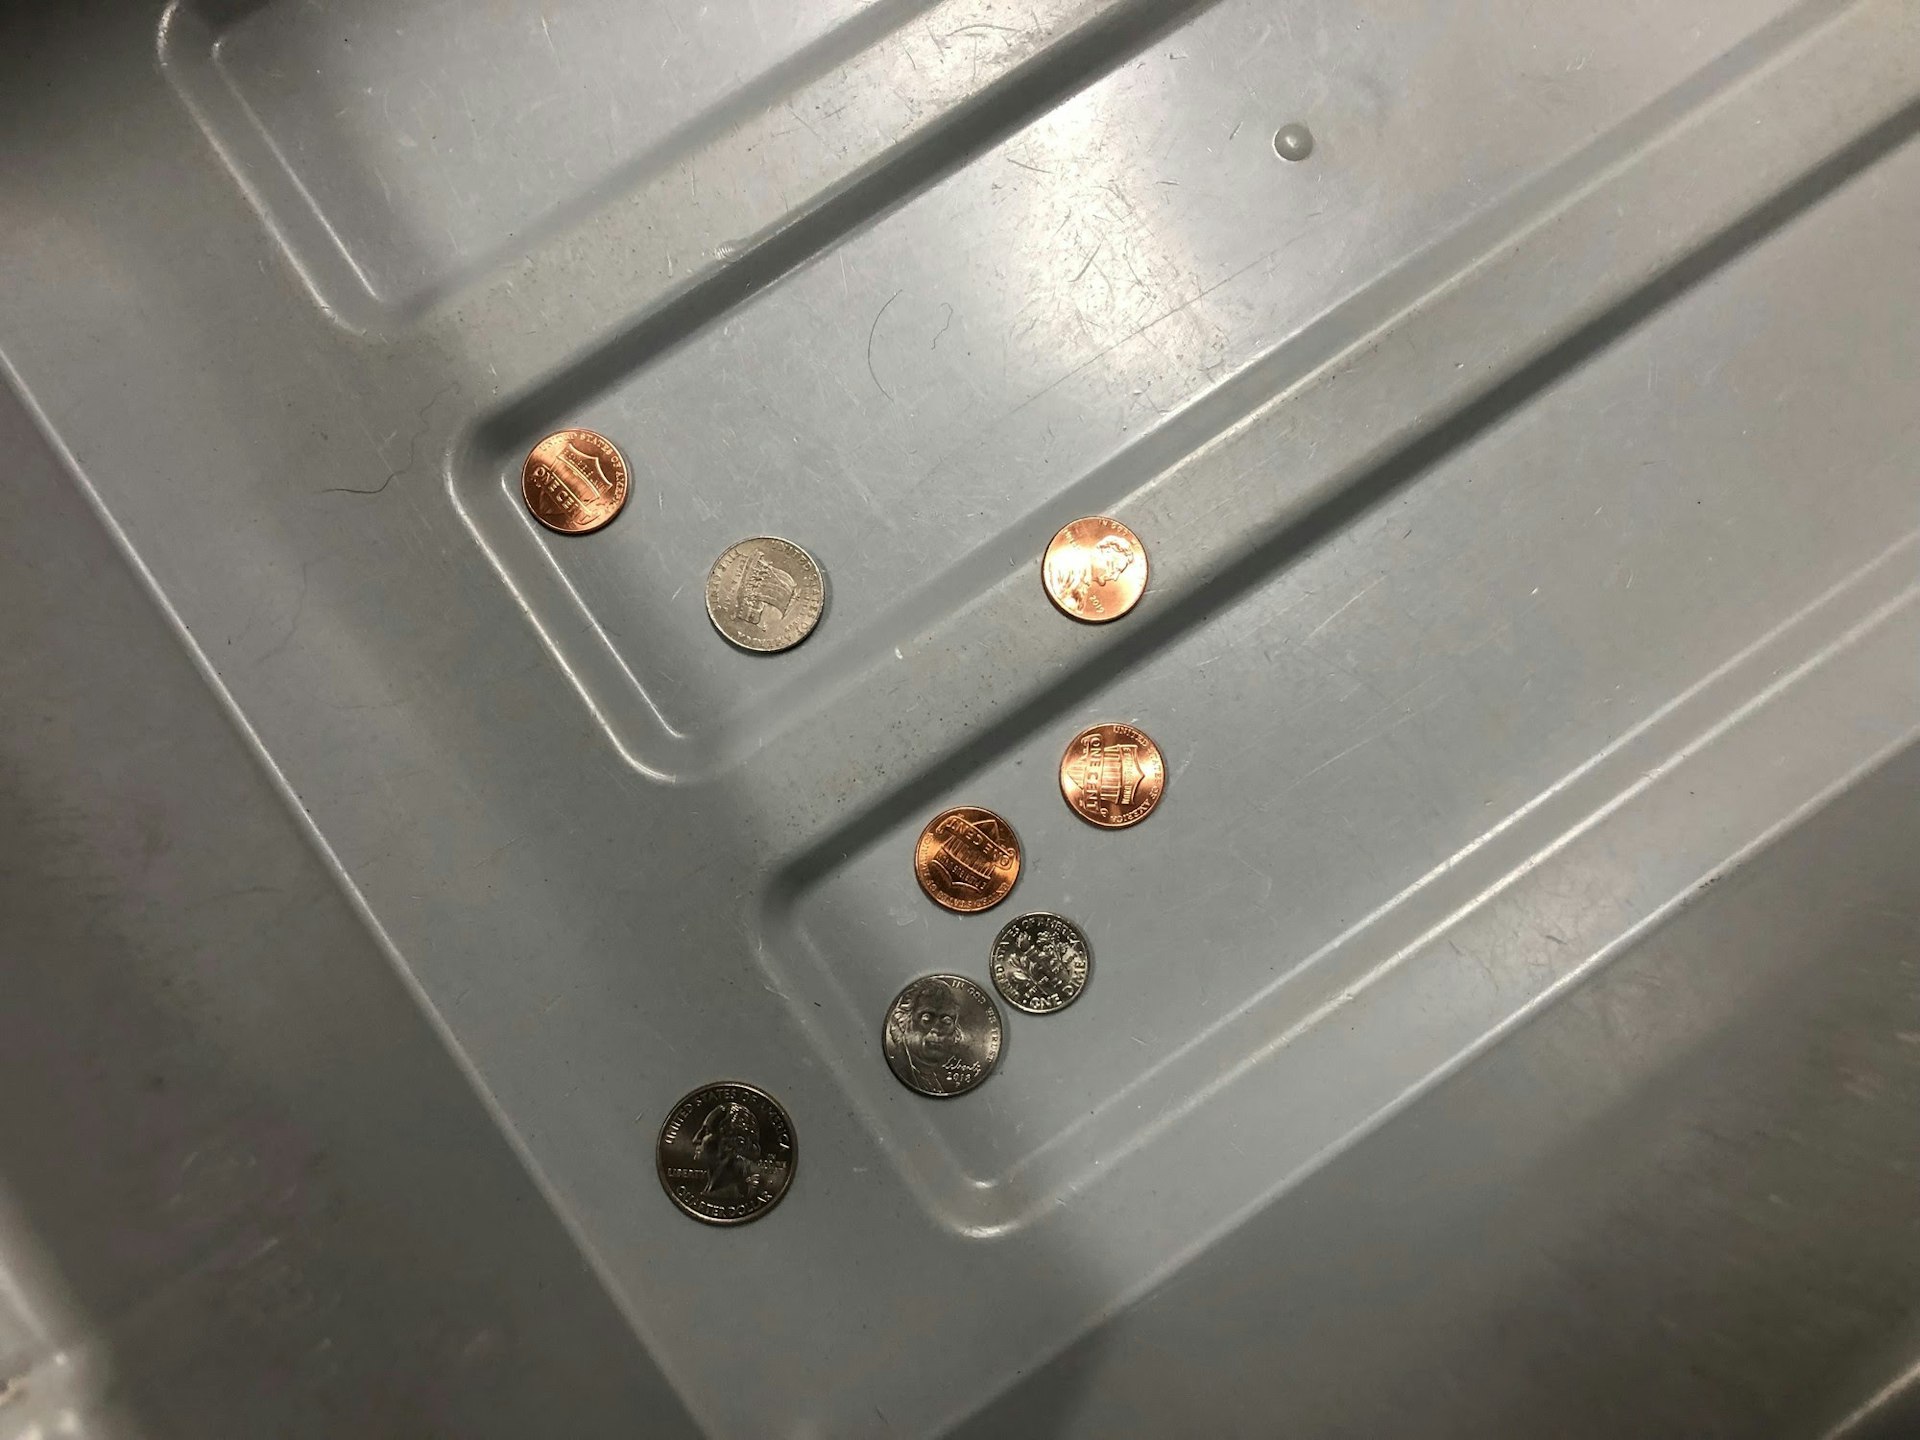 Coins in a grey TSA bin